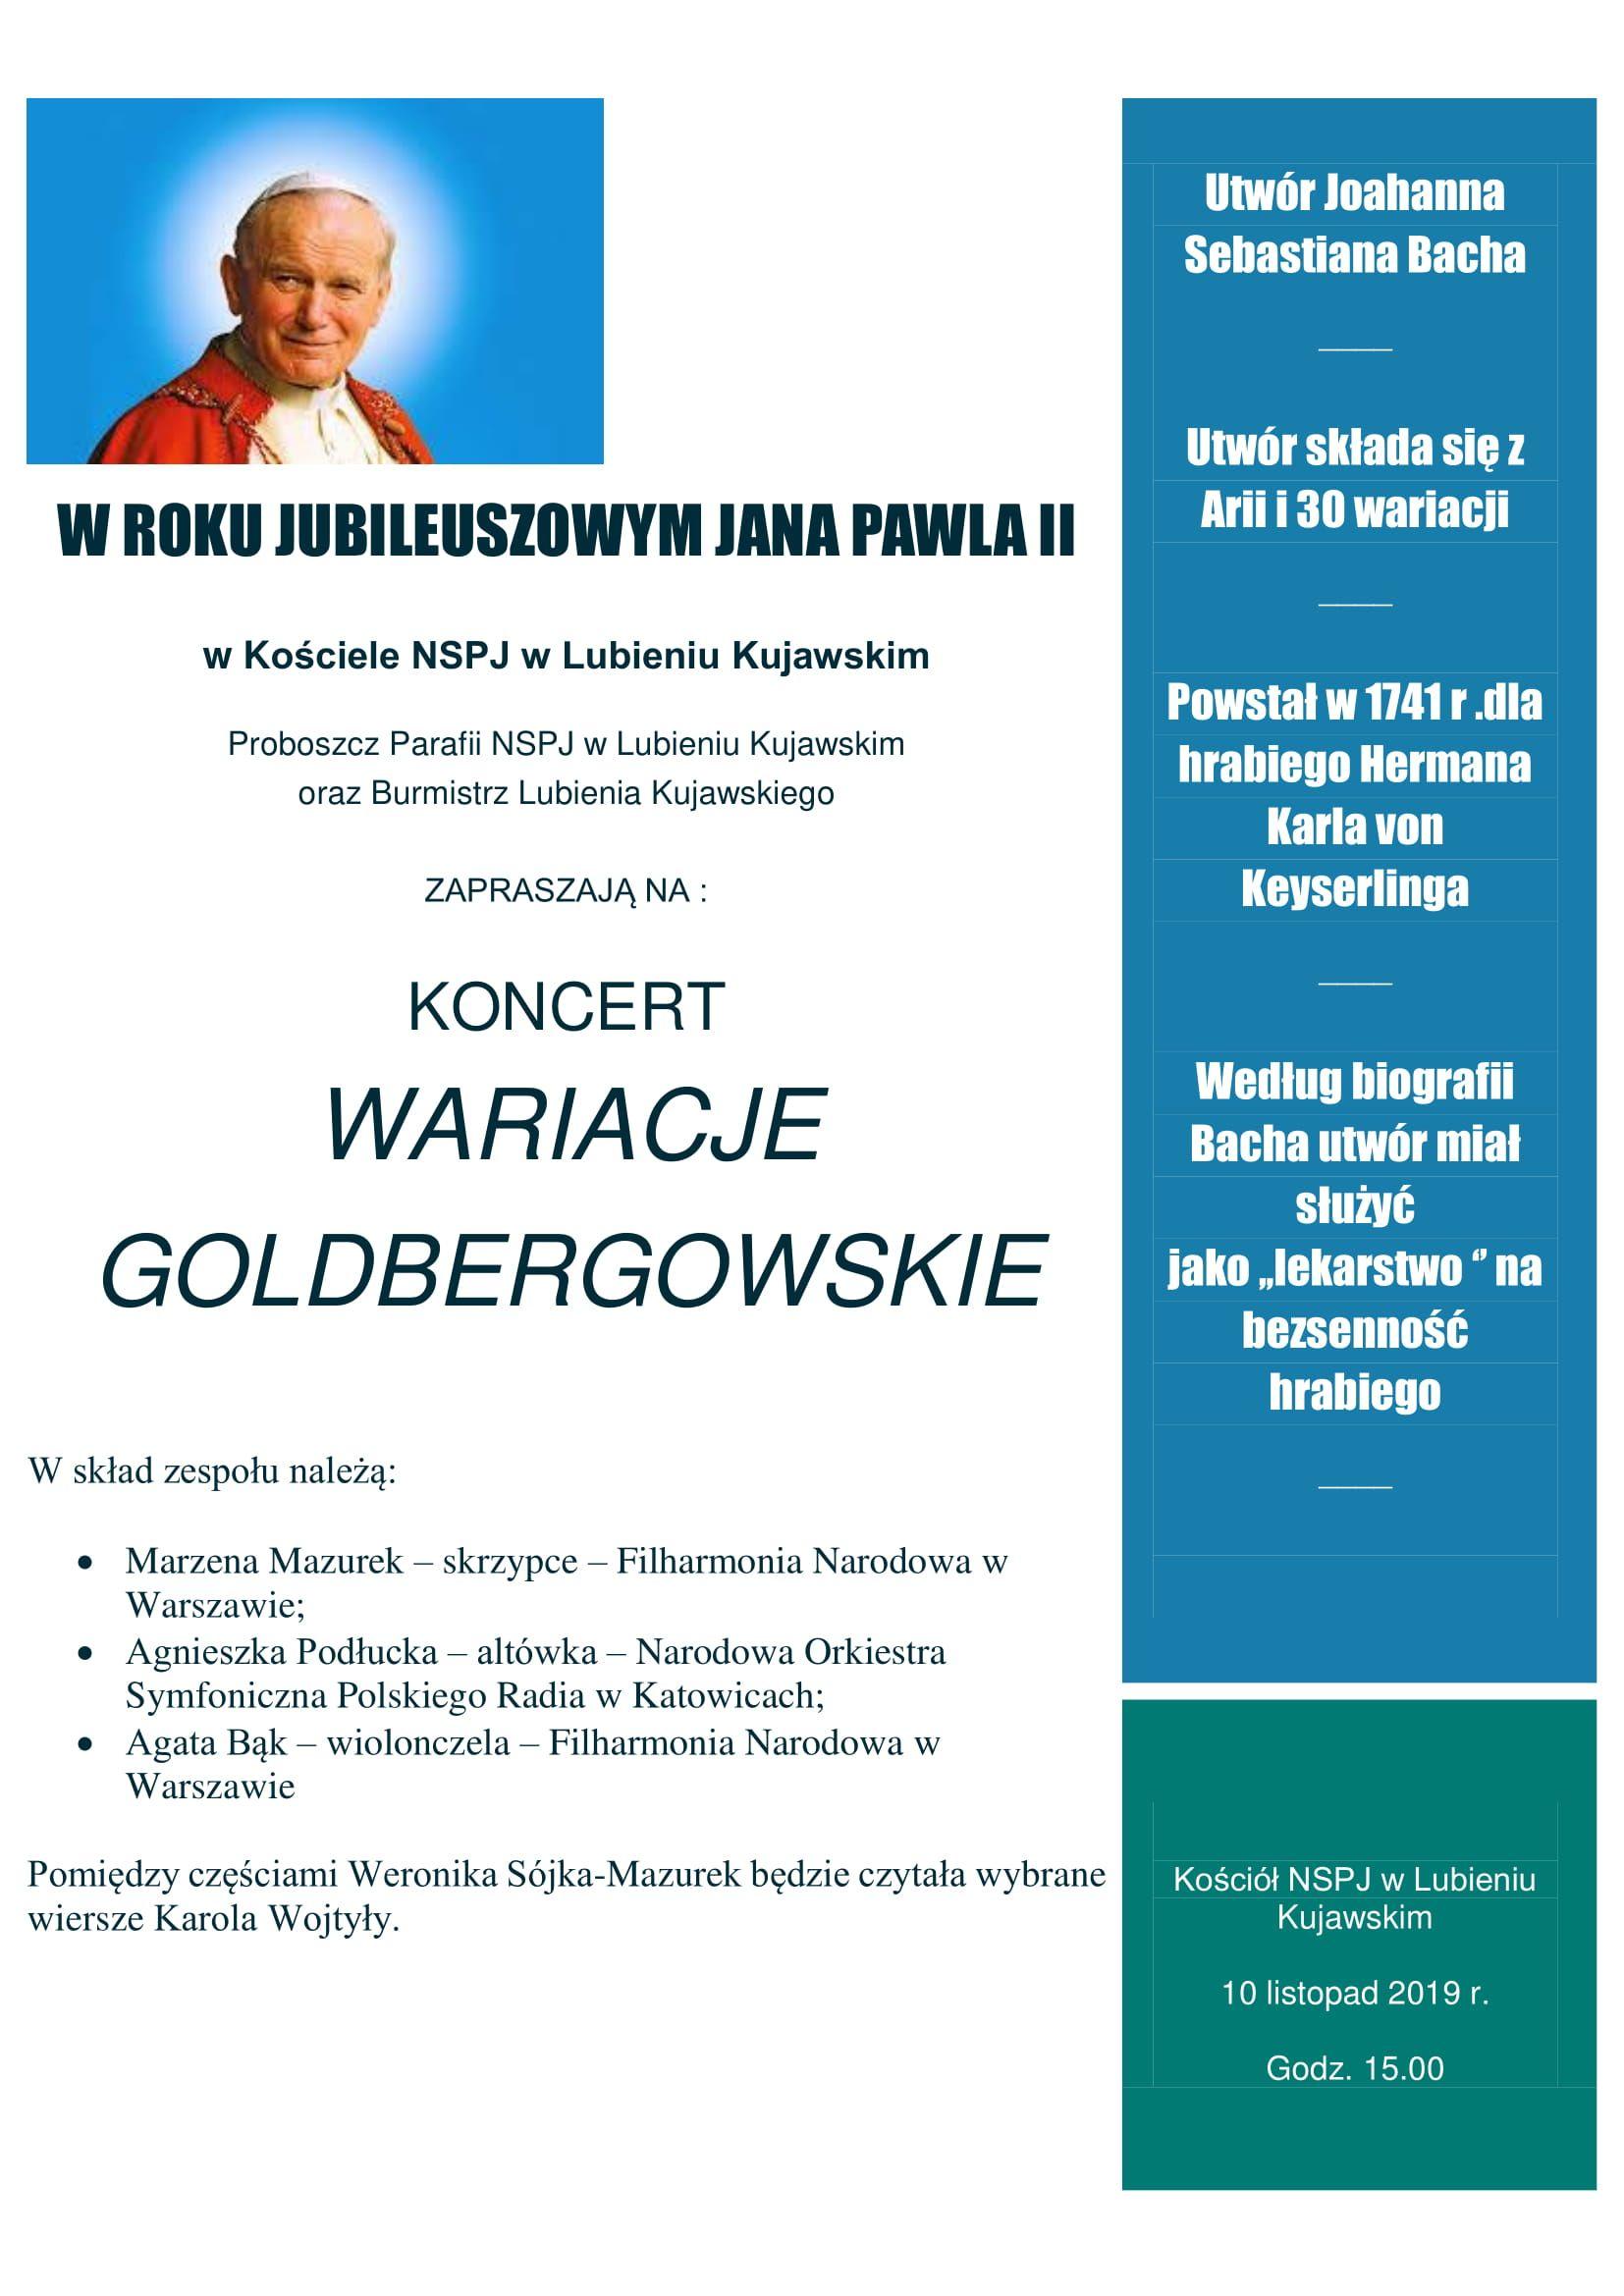 Koncert - Wariacje Goldbergowskie (zaproszenie)